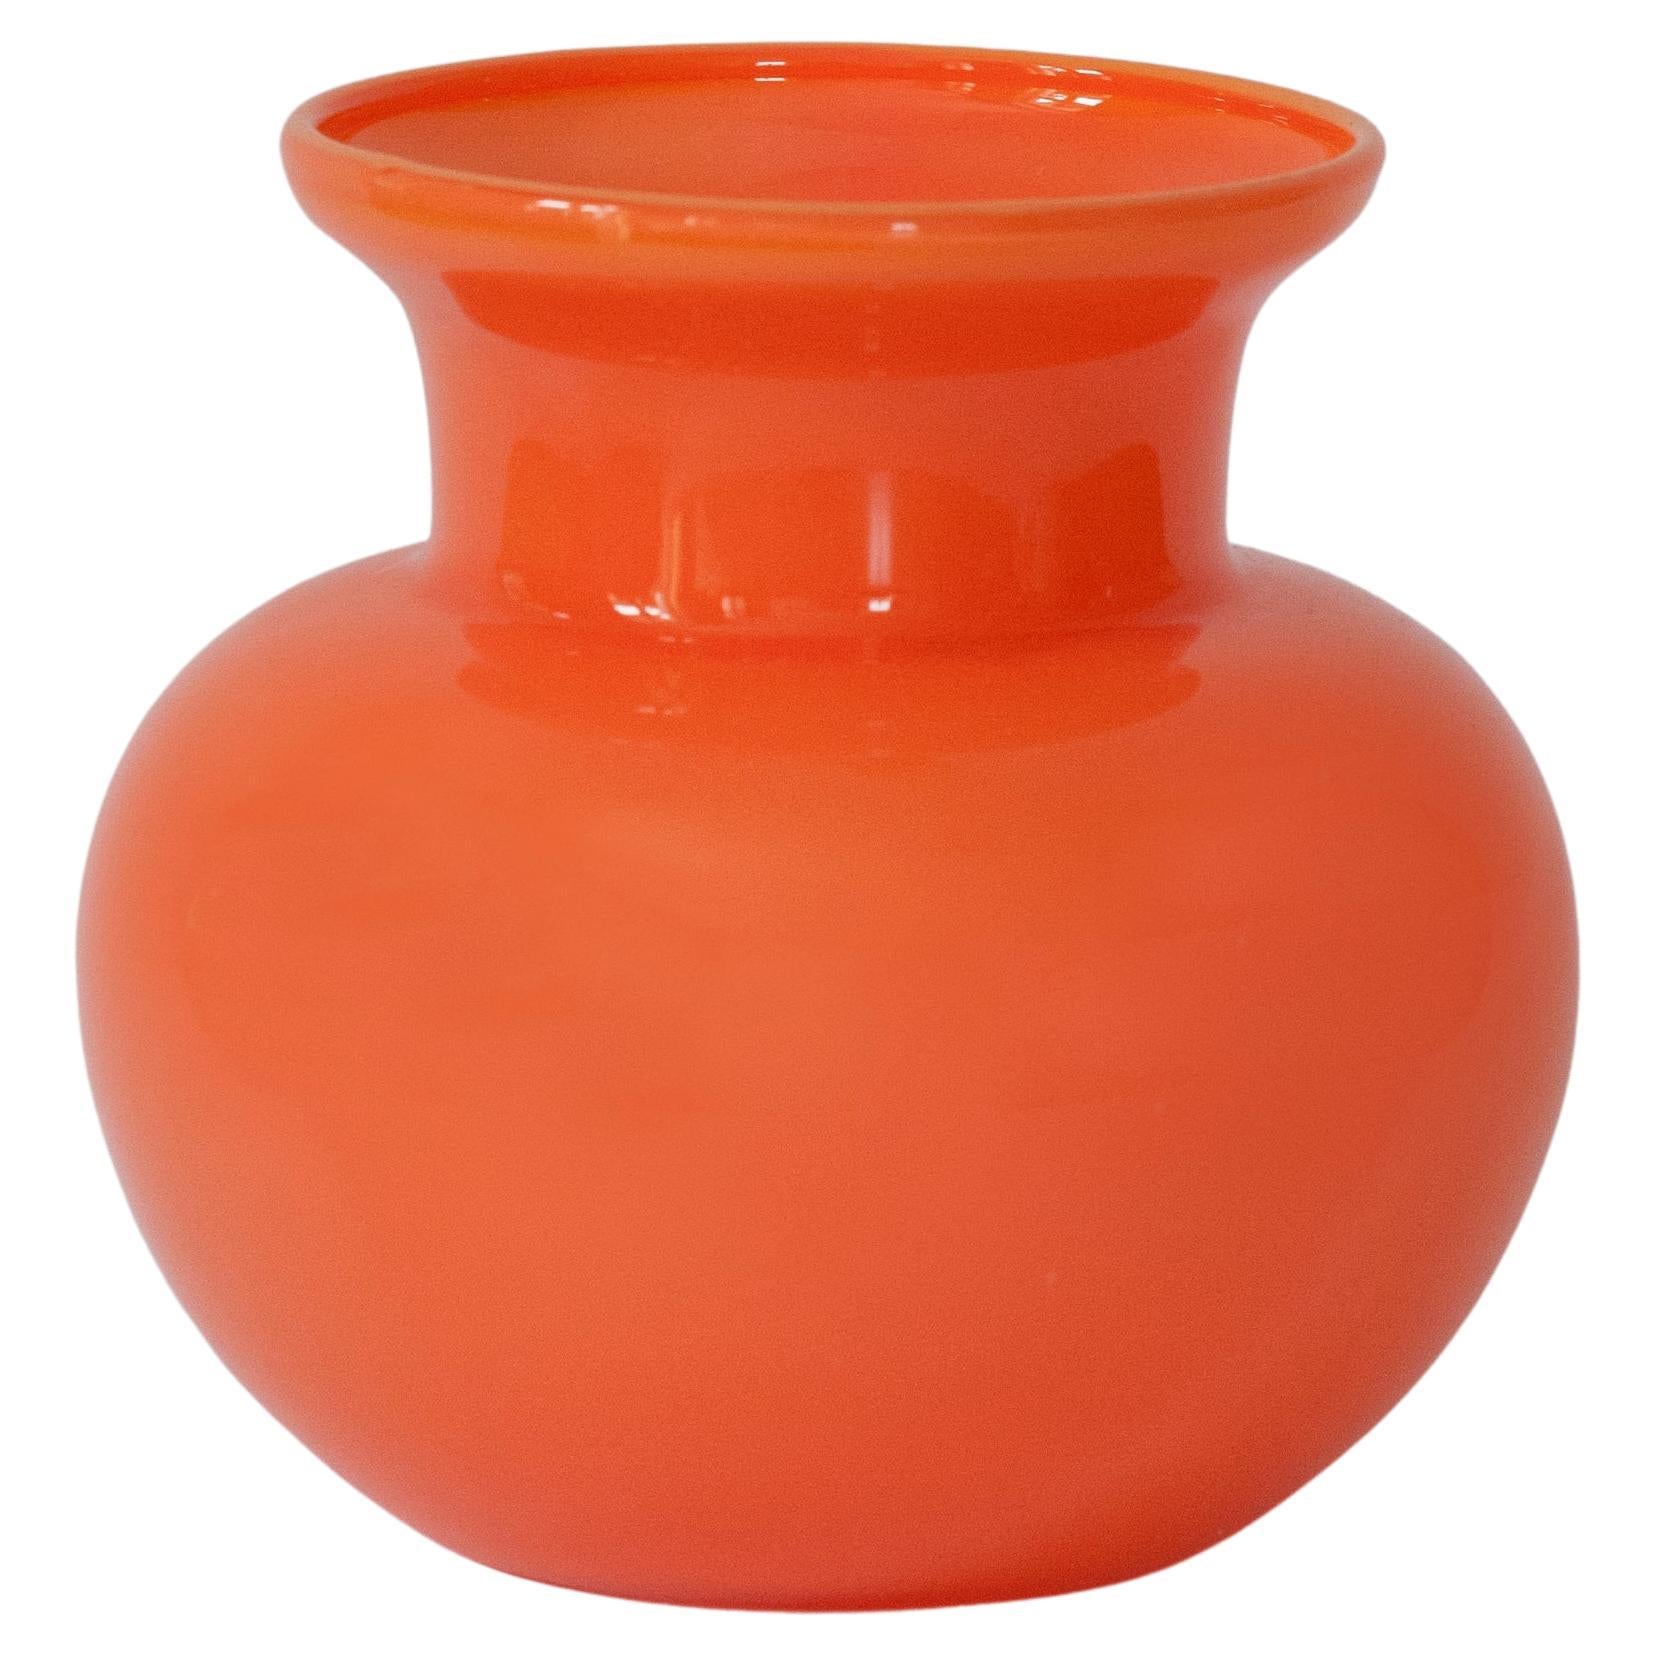 Petit vase orange vintage, 20ème siècle, Europe, années 1960